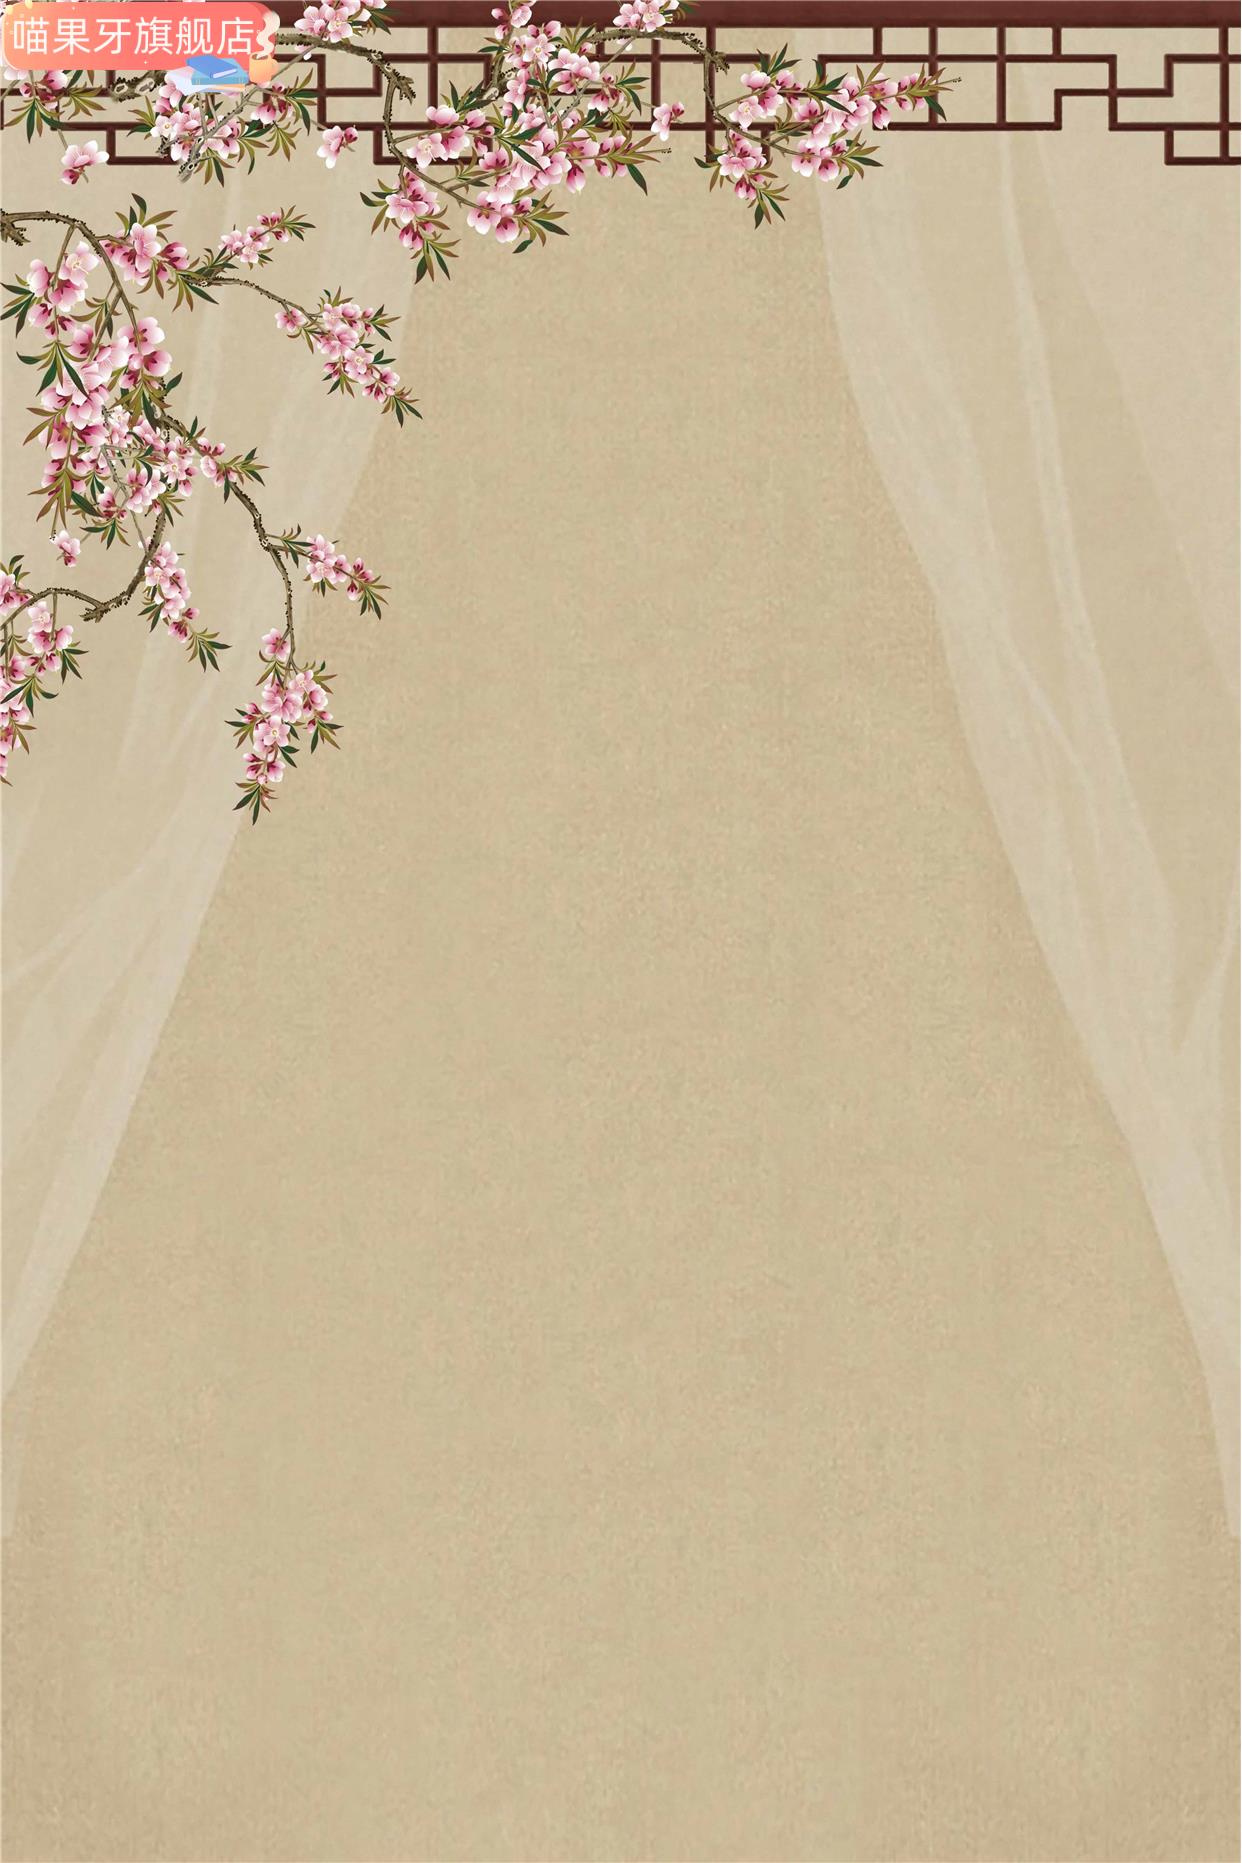 个人艺道照背景布民国风旗袍拍照具术笔画影楼婚摄影极简复中国风